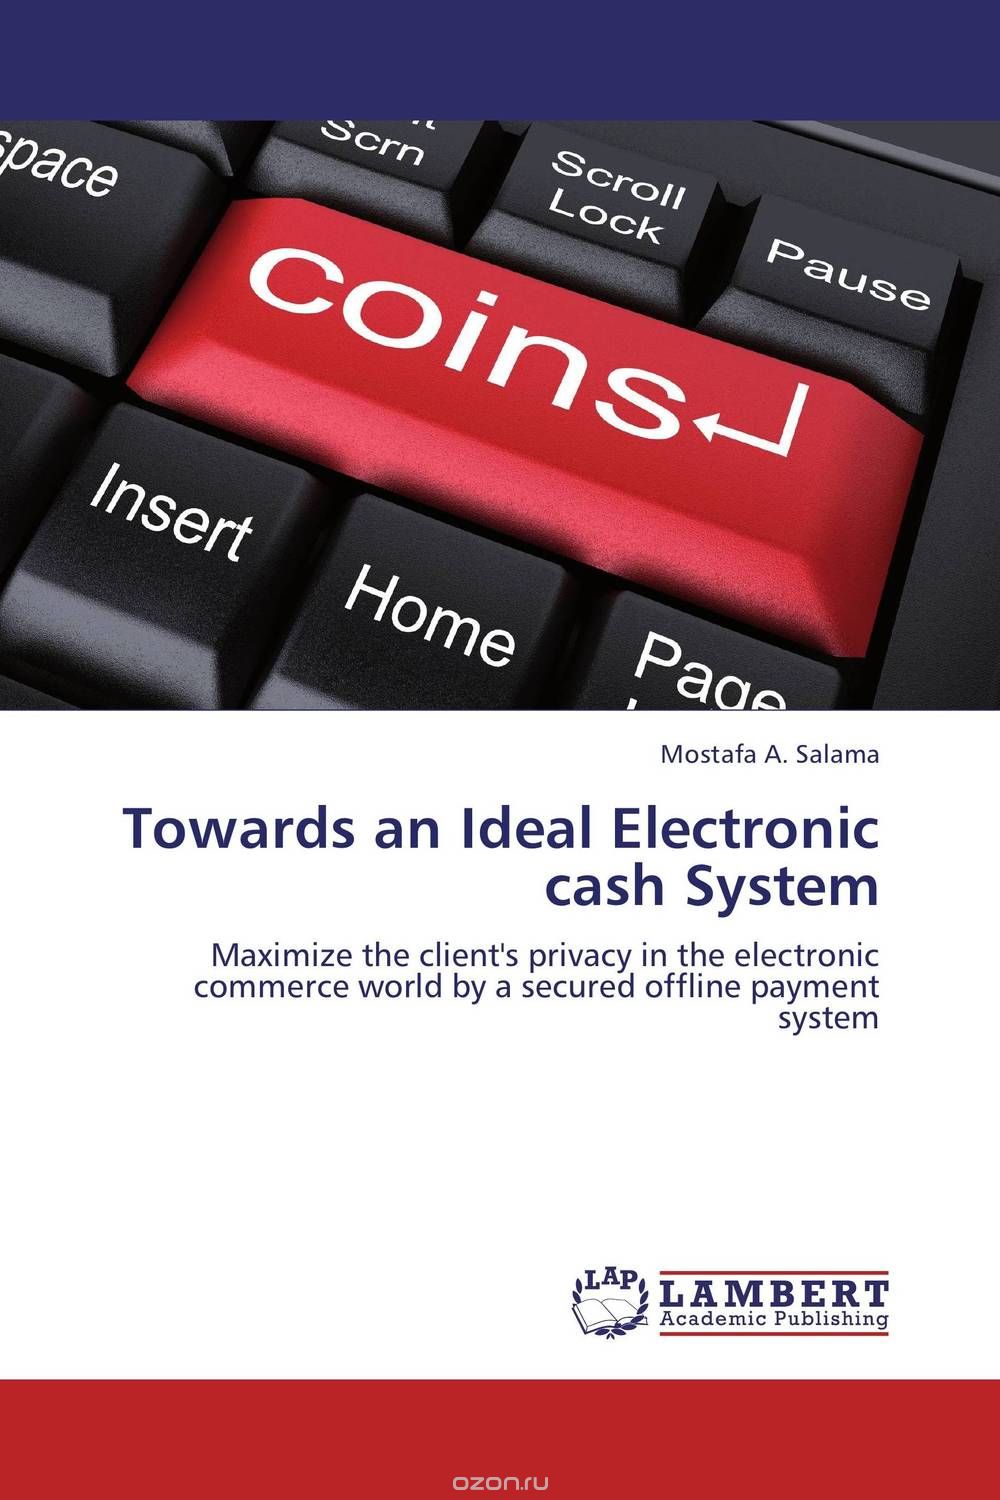 Скачать книгу "Towards an Ideal Electronic cash System"